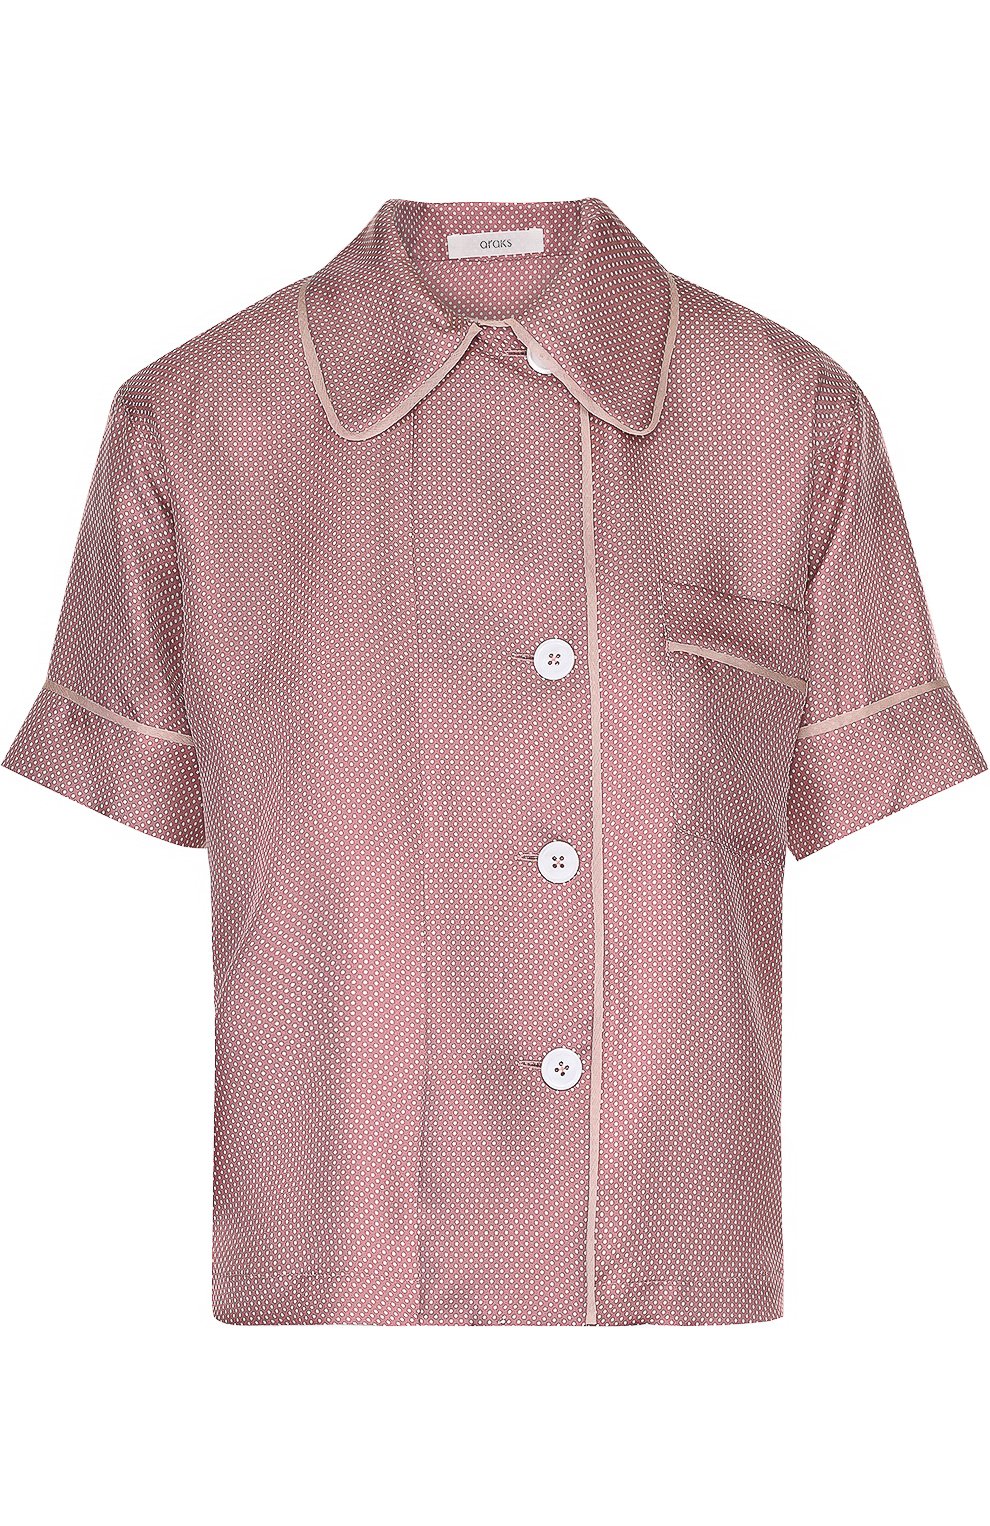 Блузы Araks, Шелковая блуза с коротким рукавом Araks, США, Розовый, Шелк: 100%;, 2022399  - купить